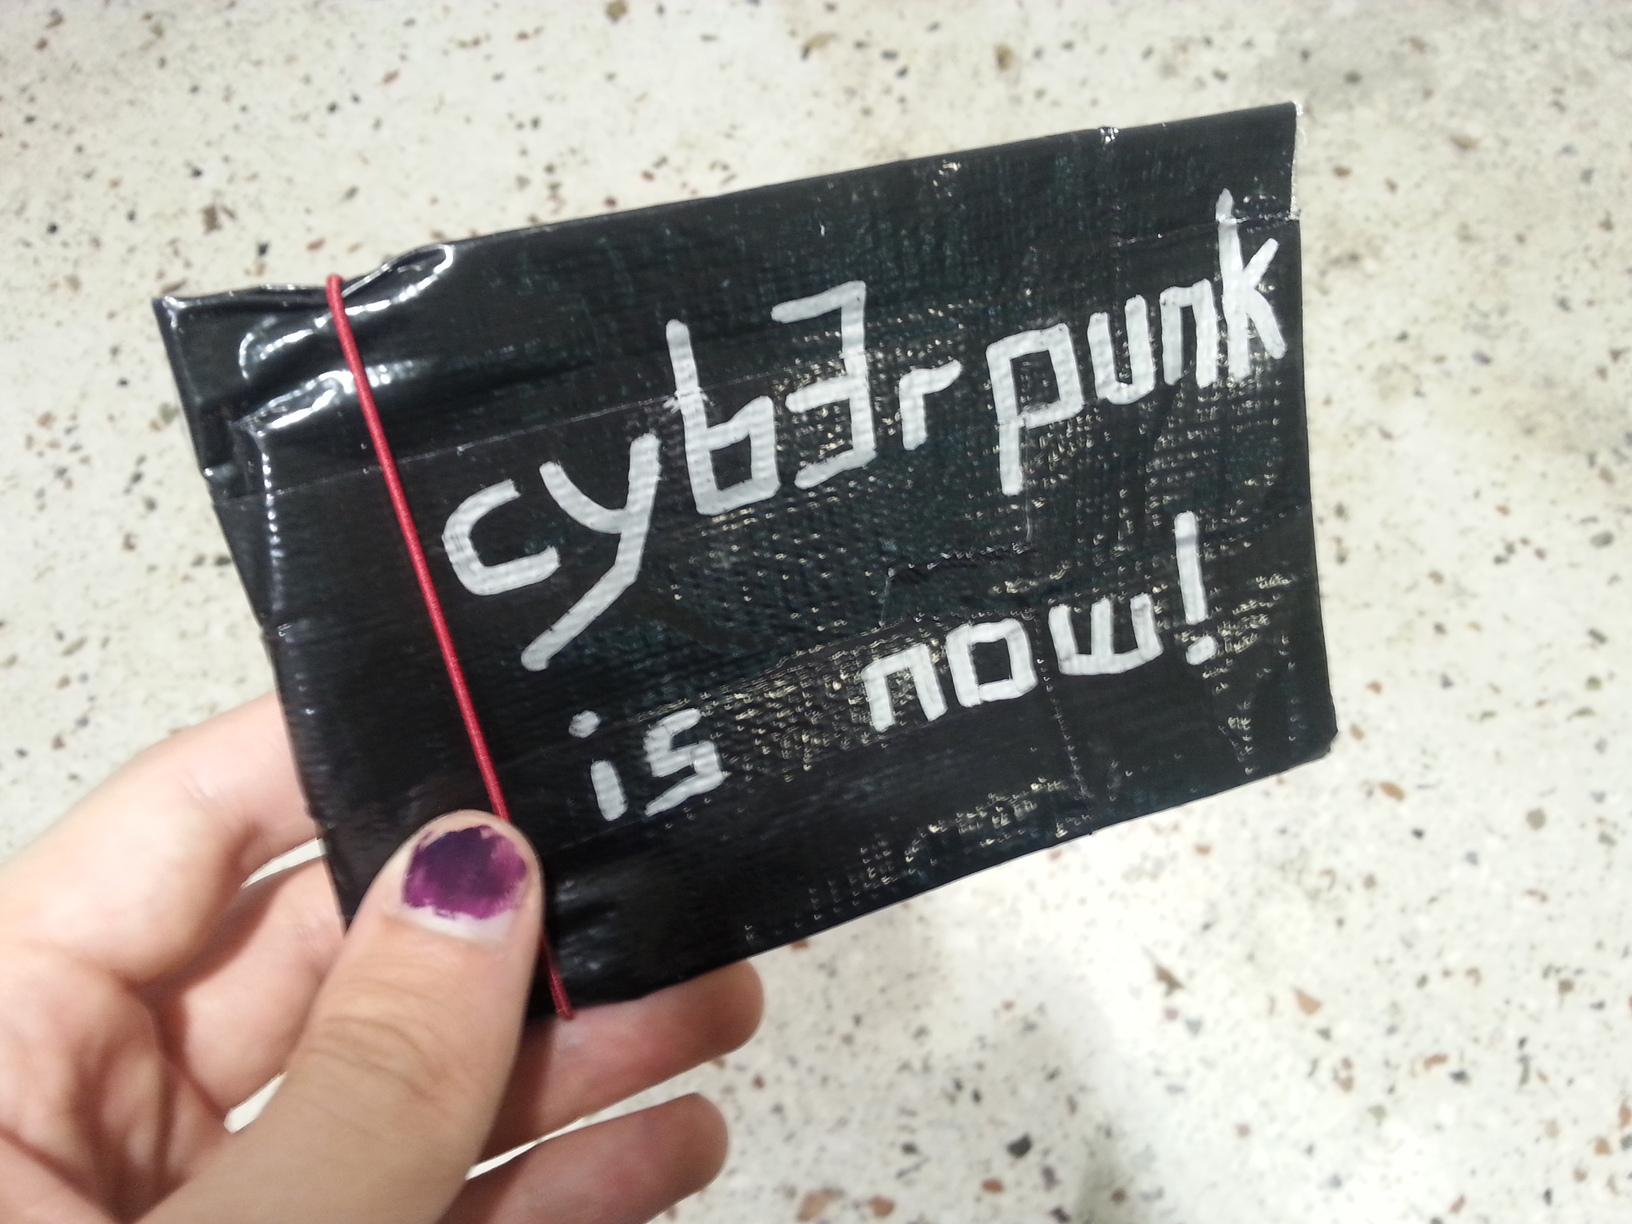 Eine Handy-große Tasche aus einem silbrigen Material, darauf steht 'cyberpunk is now'.